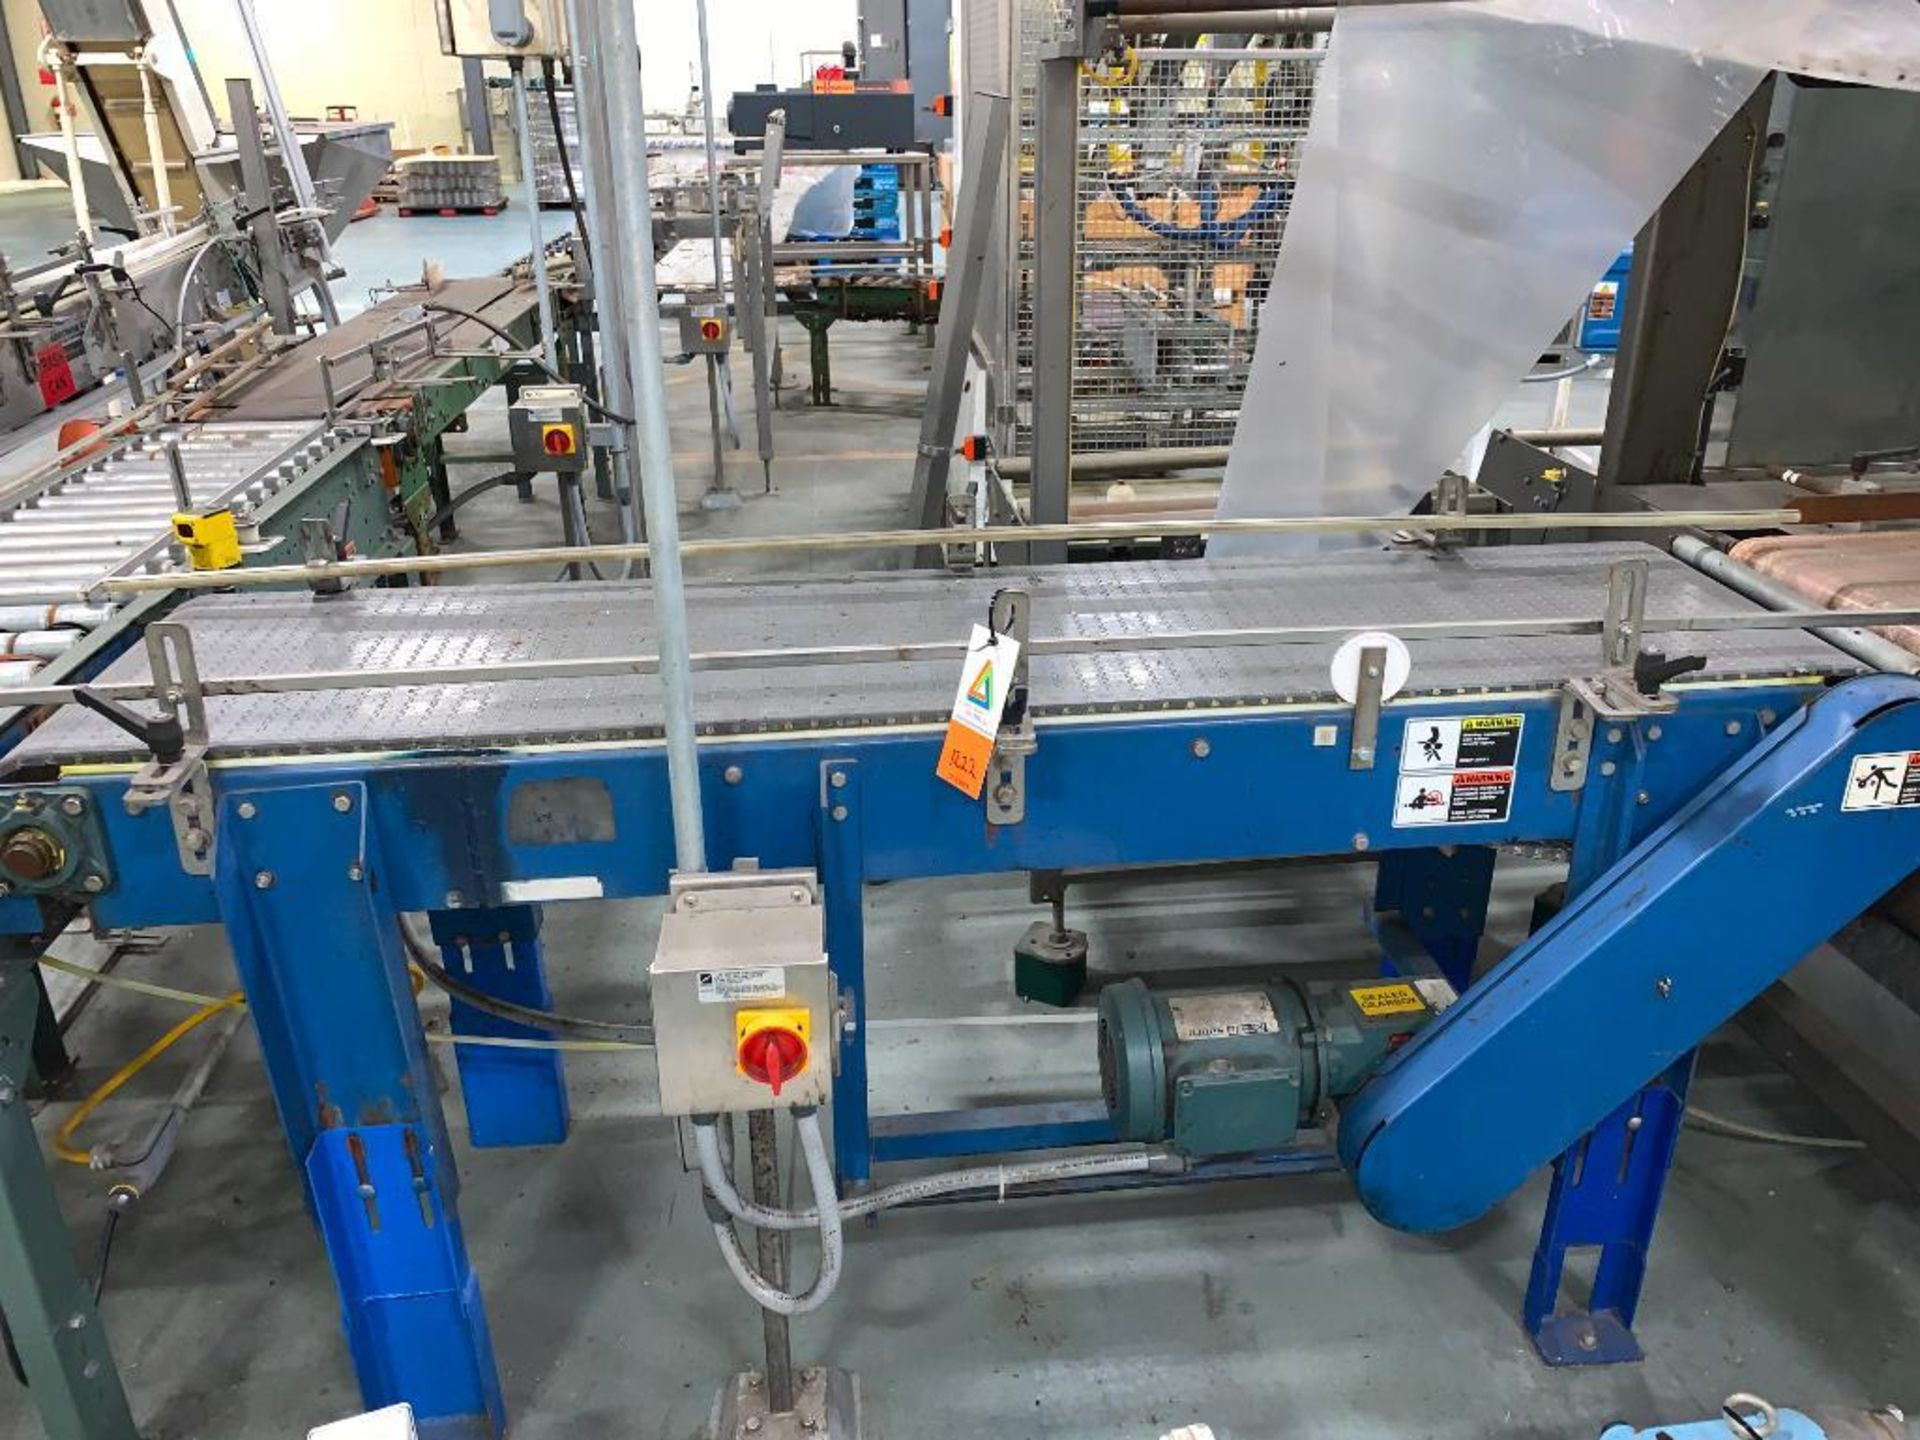 mild steel conveyor, 76 in. x 18 in. x 35 in., gray plastic belt